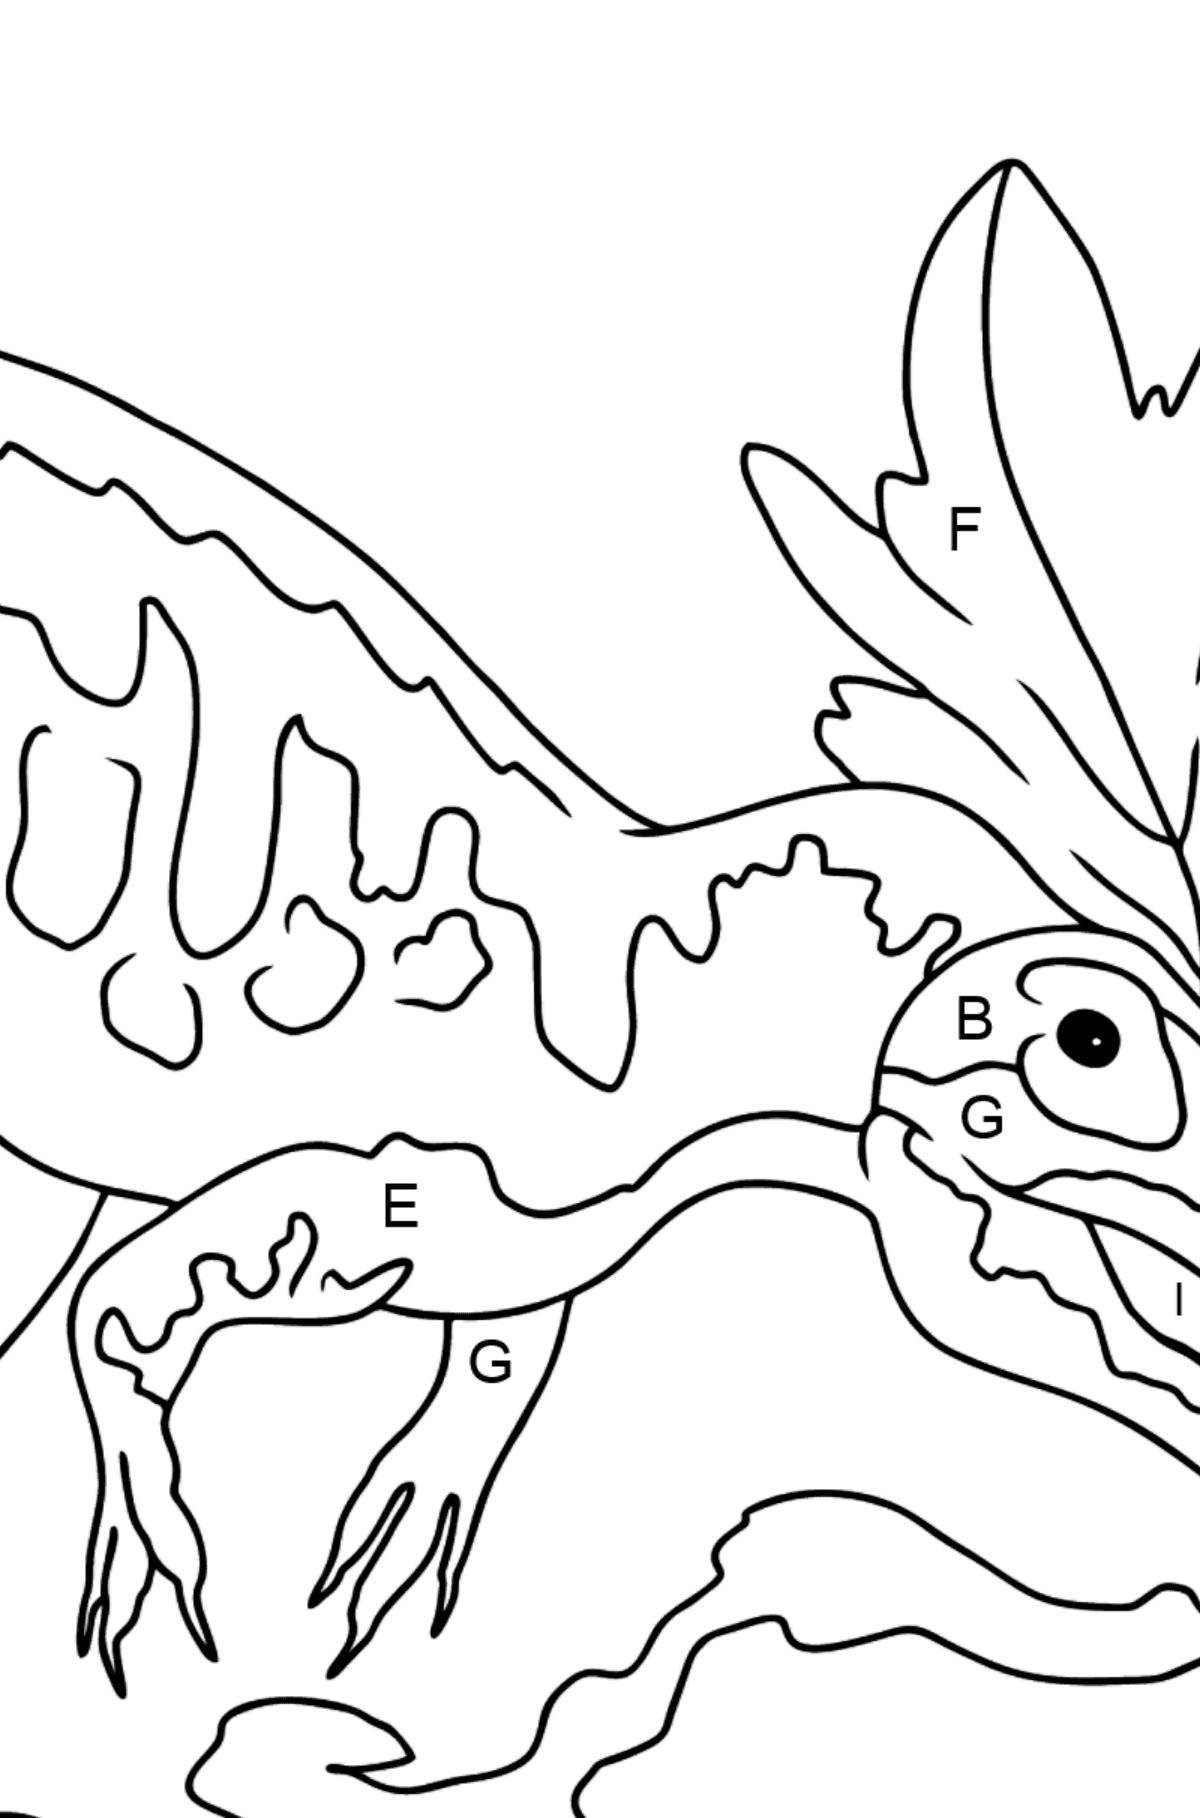 Alosaurio Dibujo Para Colorear - Colorear por Letras para Niños